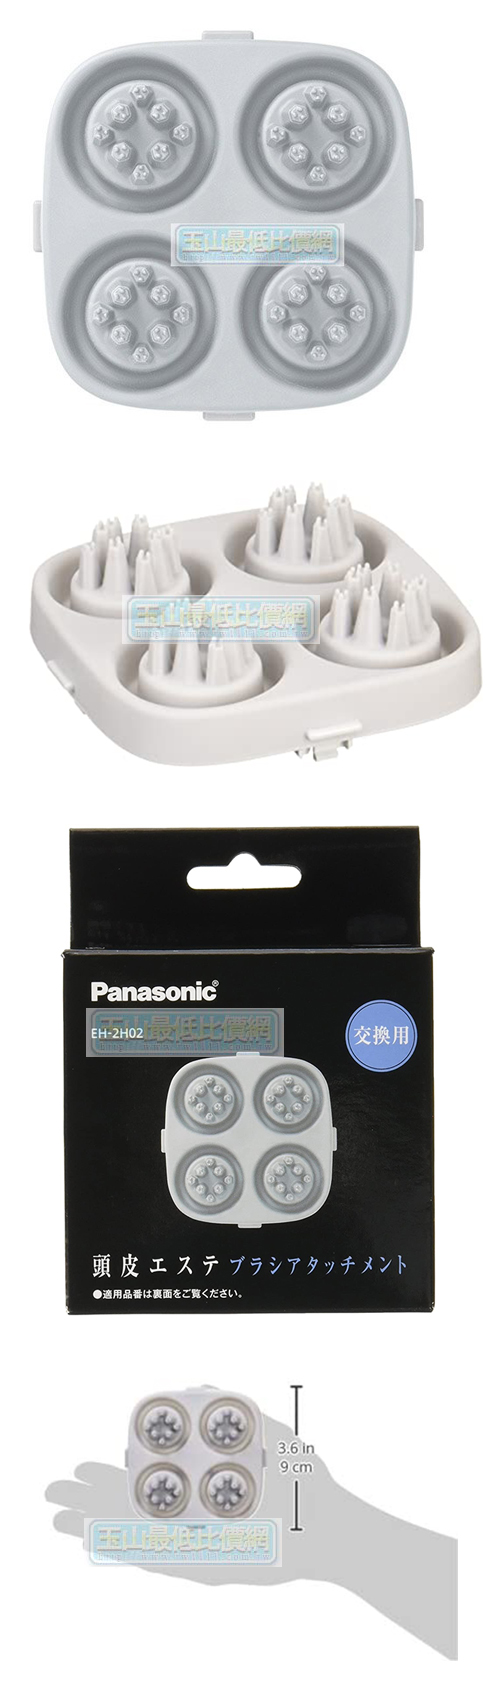 東京直購] Panasonic 國際牌松下頭皮按摩器專用磨頭EH-2H02-H 矽膠材質皮脂洗淨相容:EH-HM94-S / EH-HM77-S /  EH-HM76-H | 玉山最低比價網直營店|